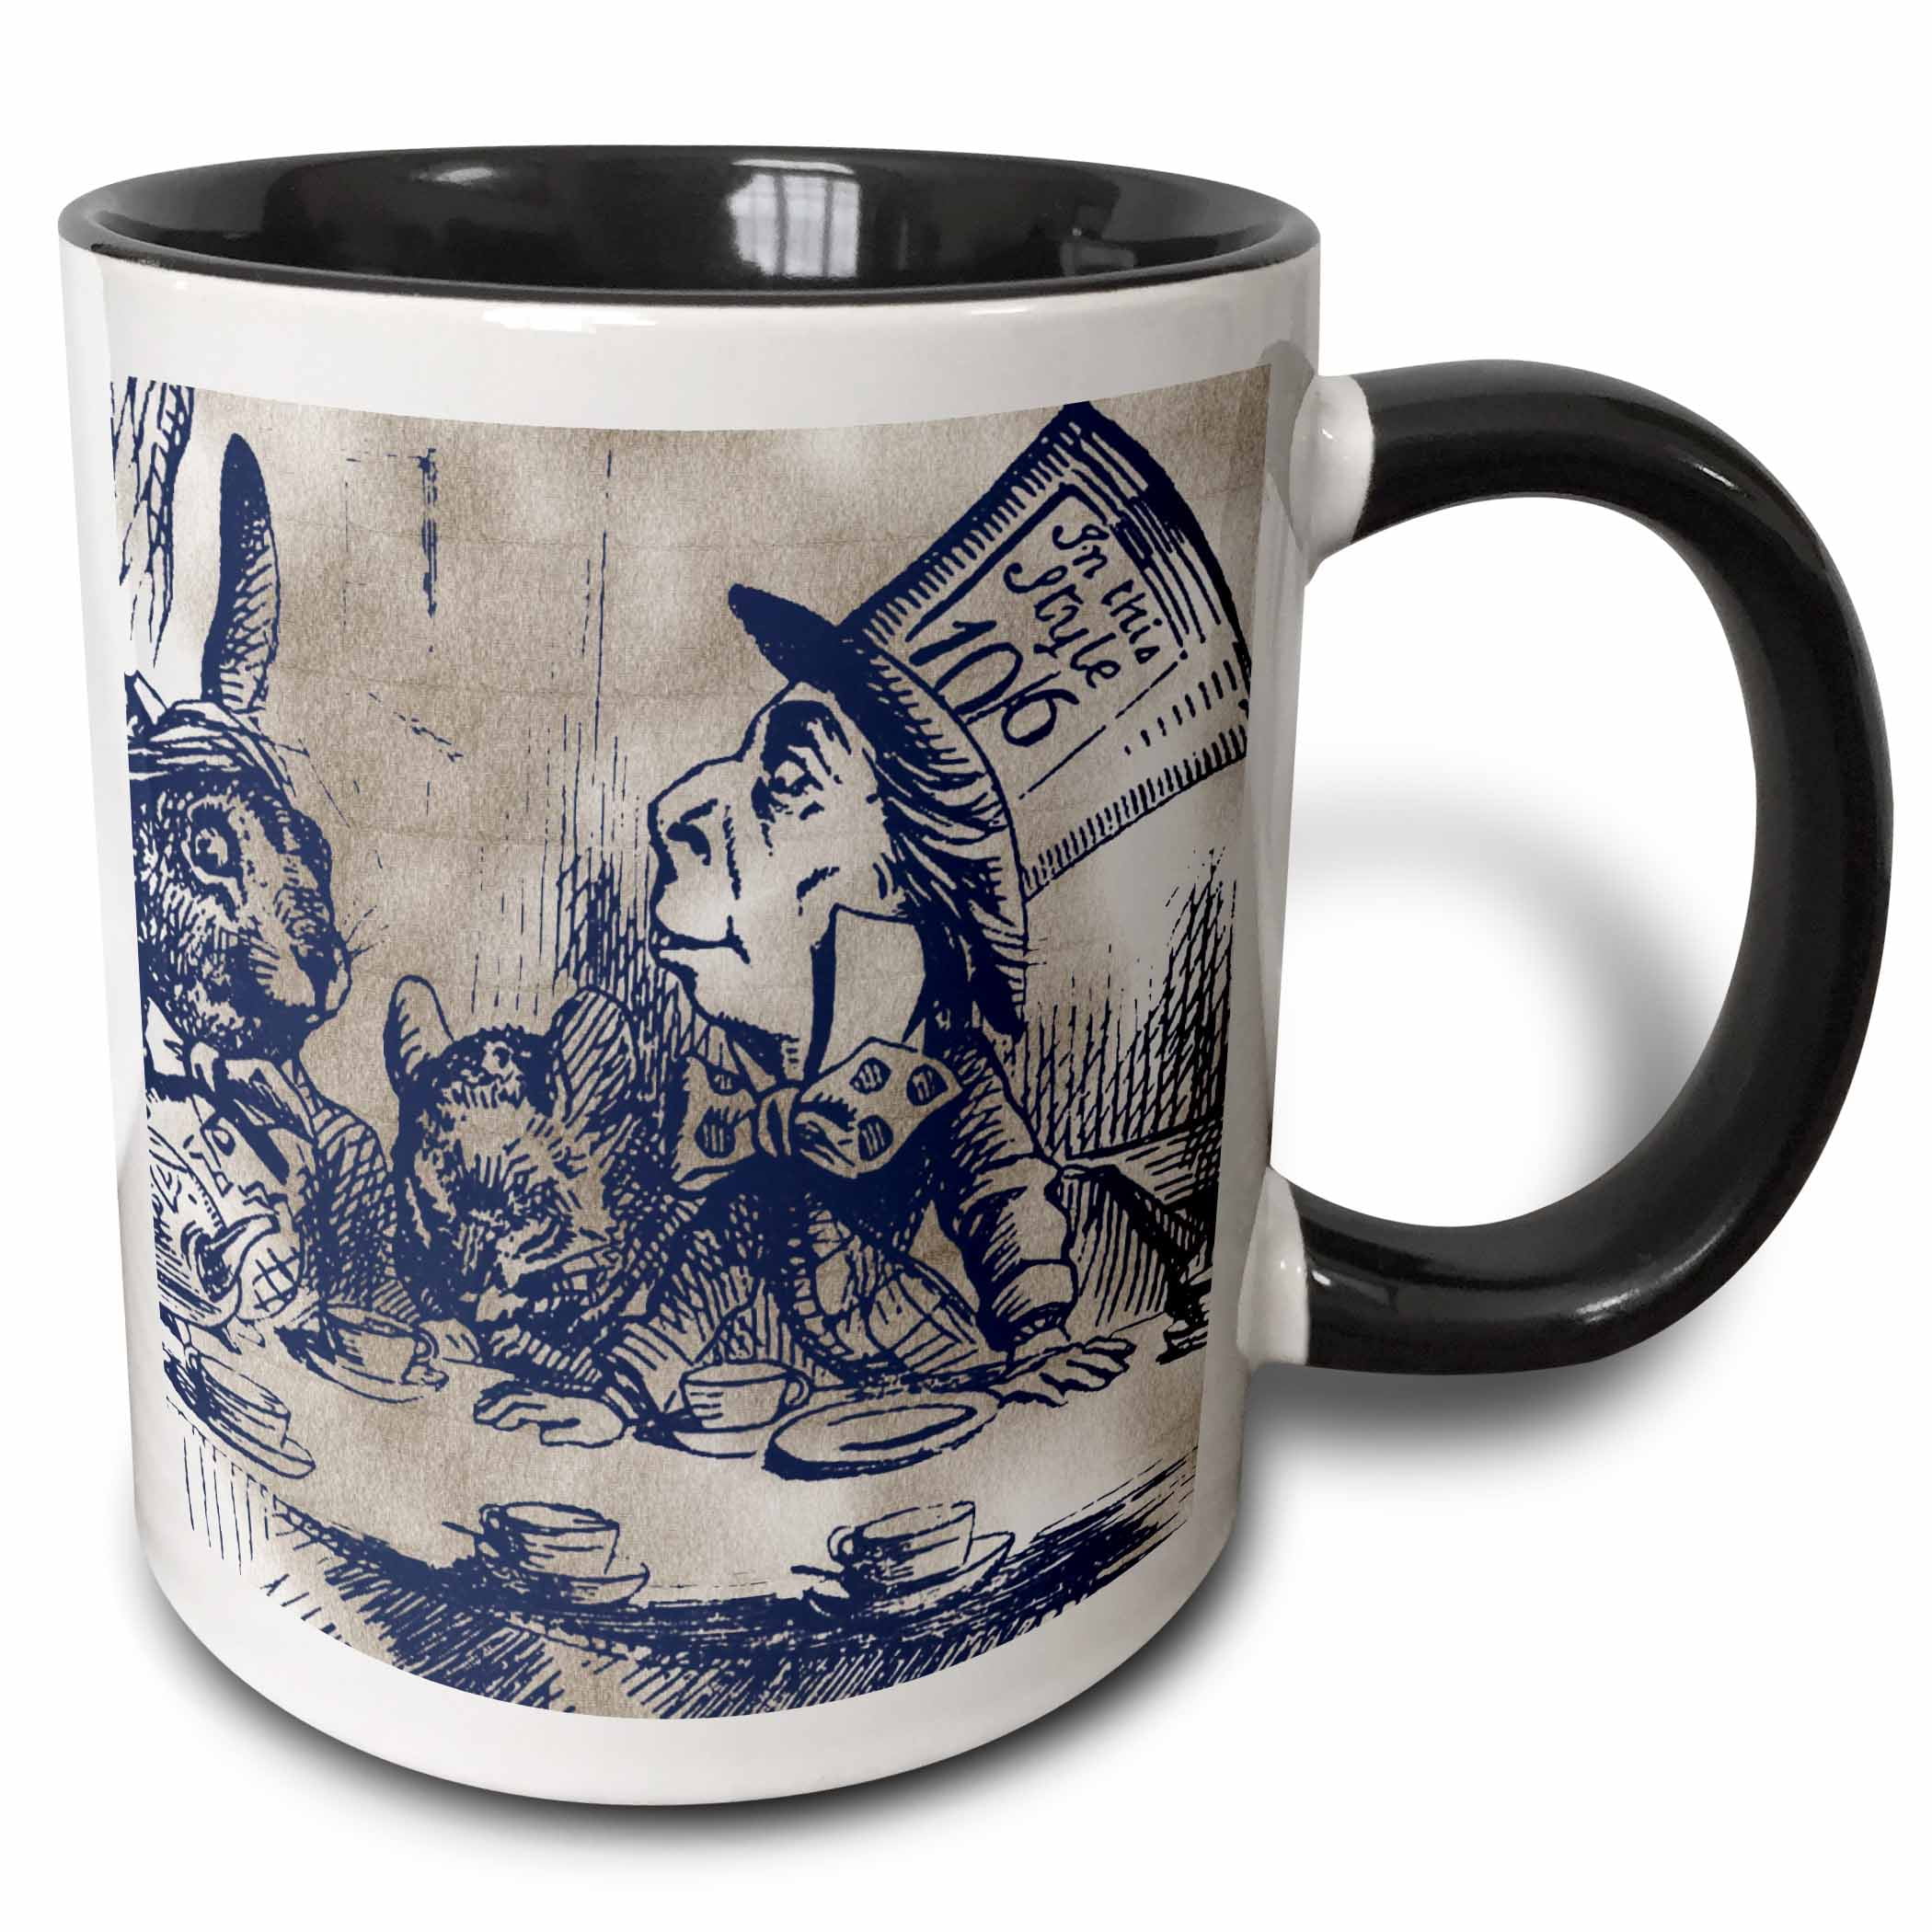 Mad Hatter Tea Party Allice in Wonderland 11oz Ceramic Mug